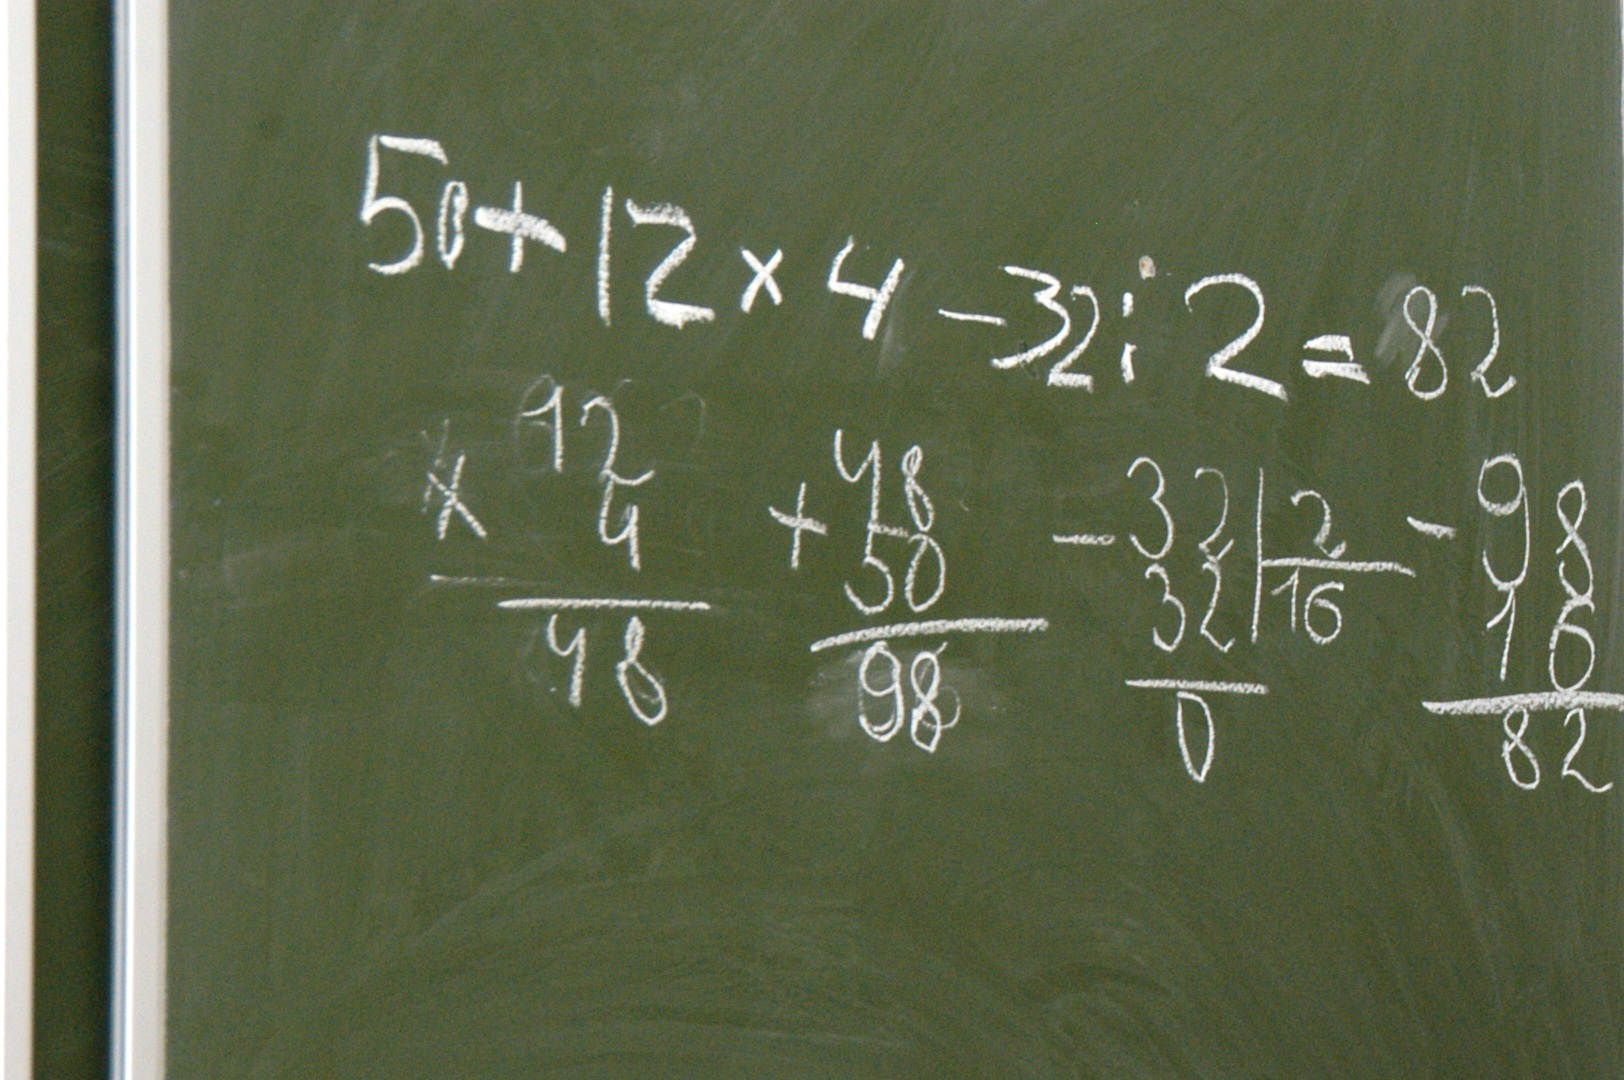 Б плюс 2 равно 12. Математика в США. 2+2 Равно 22. Лучшие математики в Америке. Два плюс два не равно четырем.